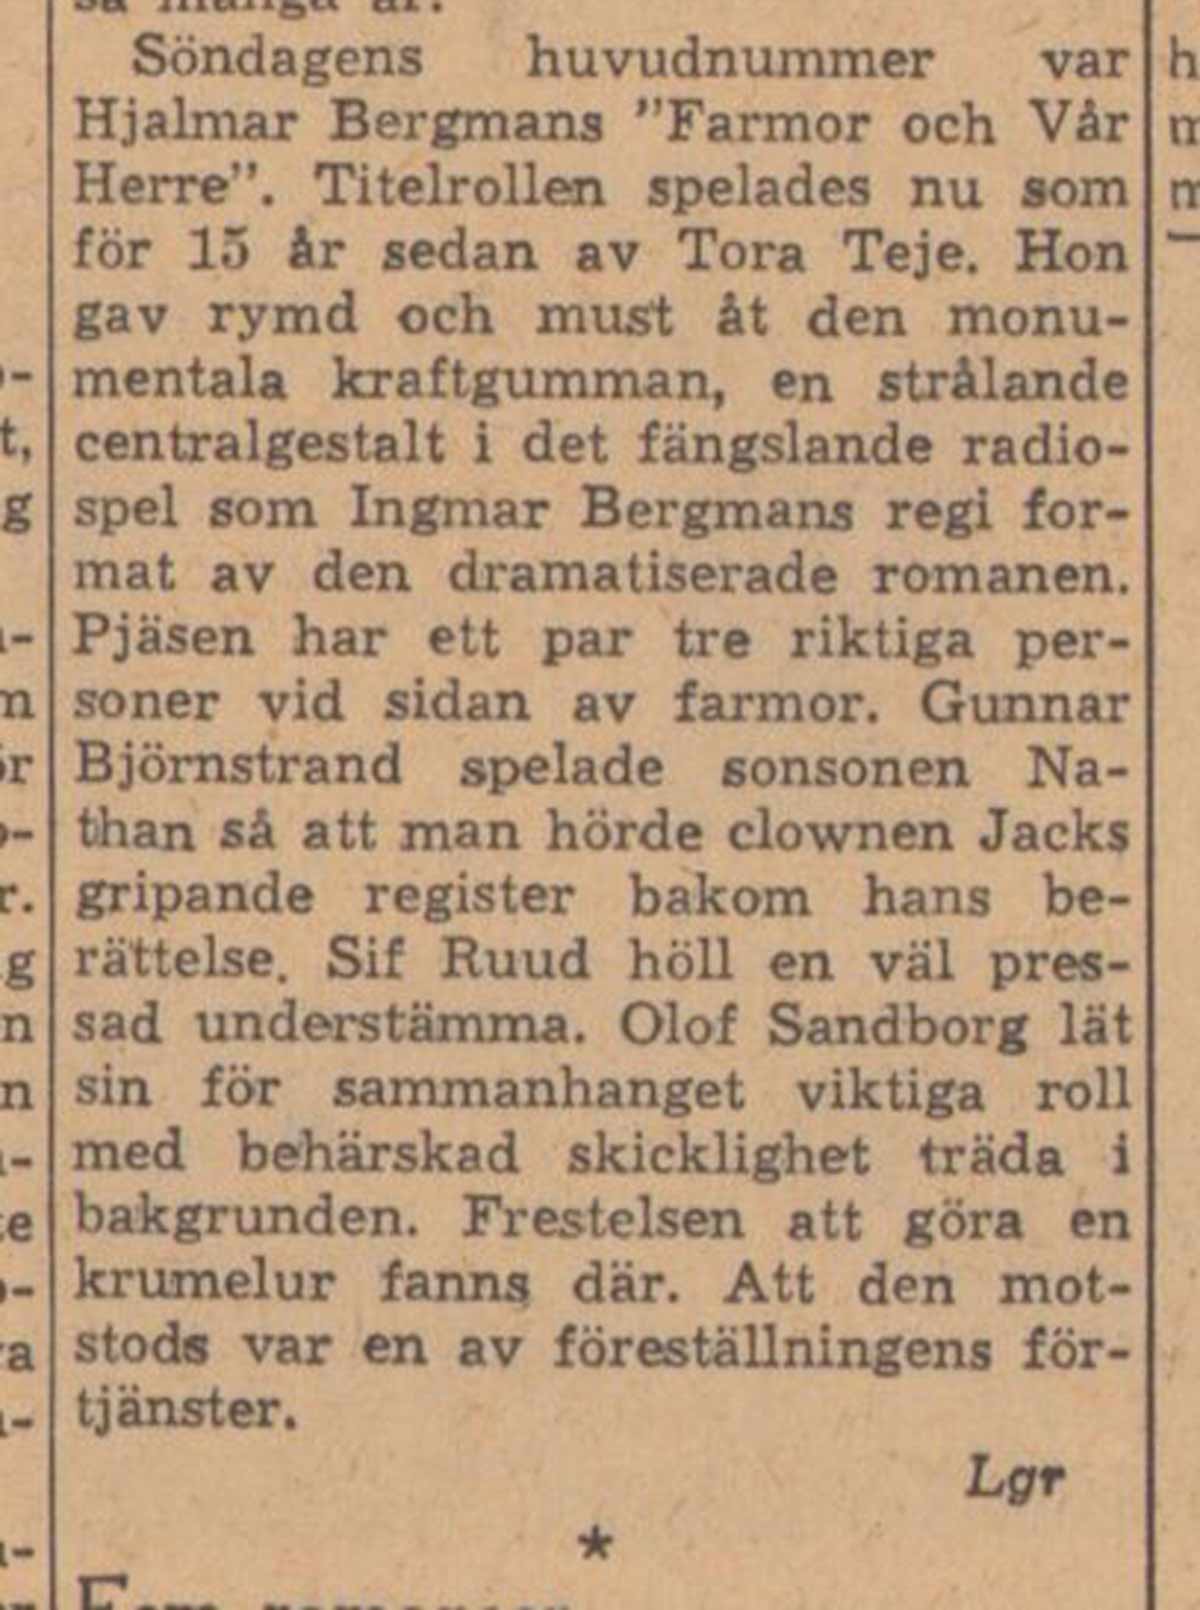 Recension av Ingmar Bergmans uppsättning av Farmor och Vår Herre i Dagens Nyheter